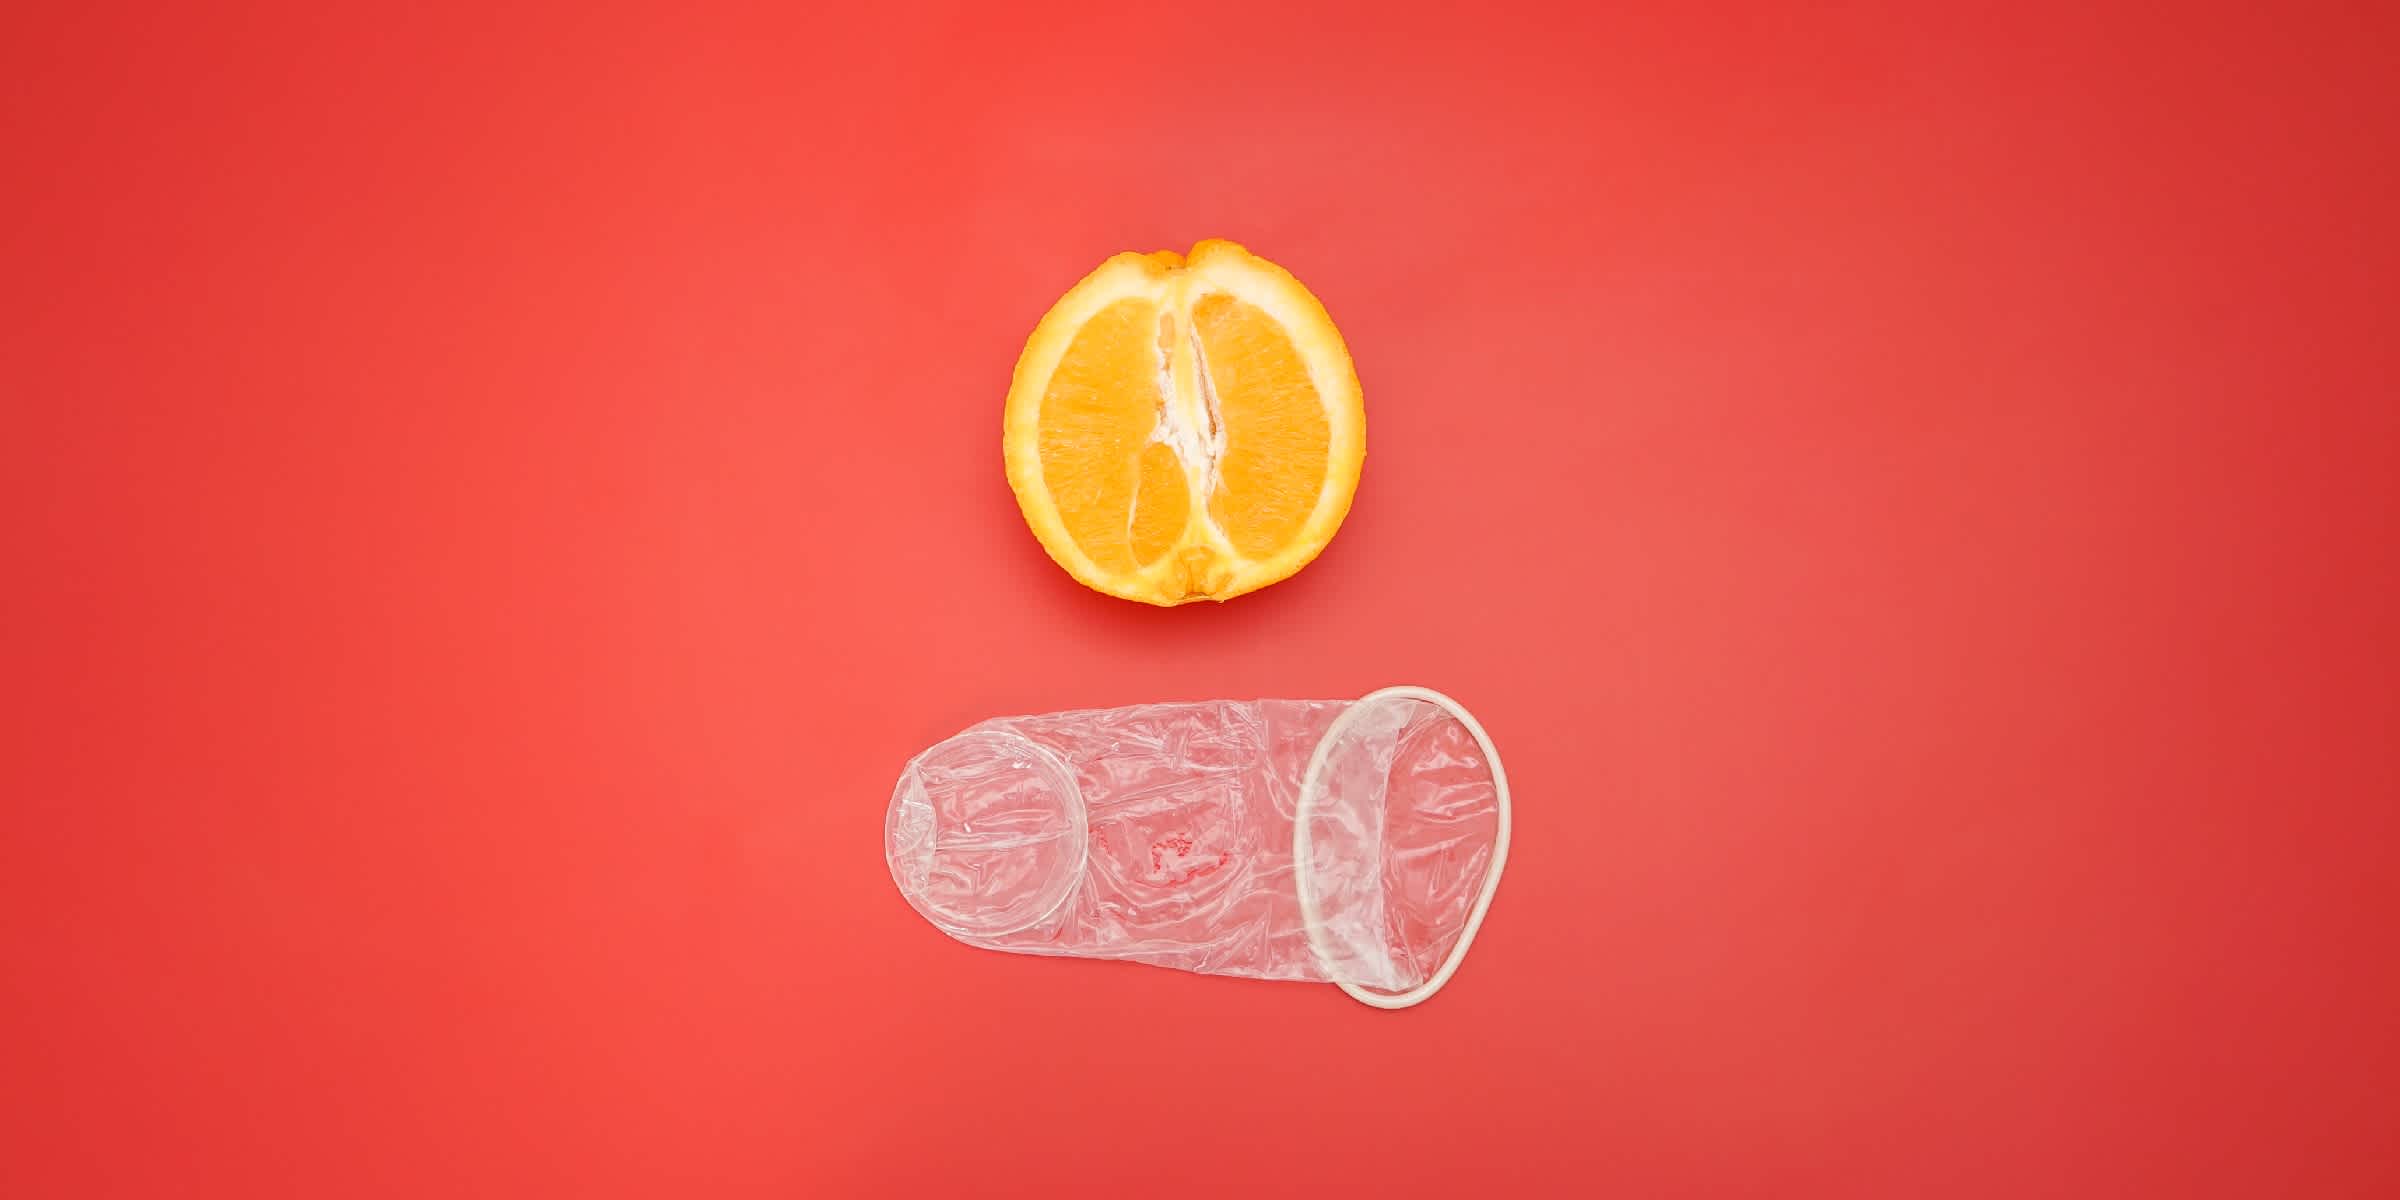 Préservatif féminin non emballé, illustré à côté d'une orange pour une perspective de taille.